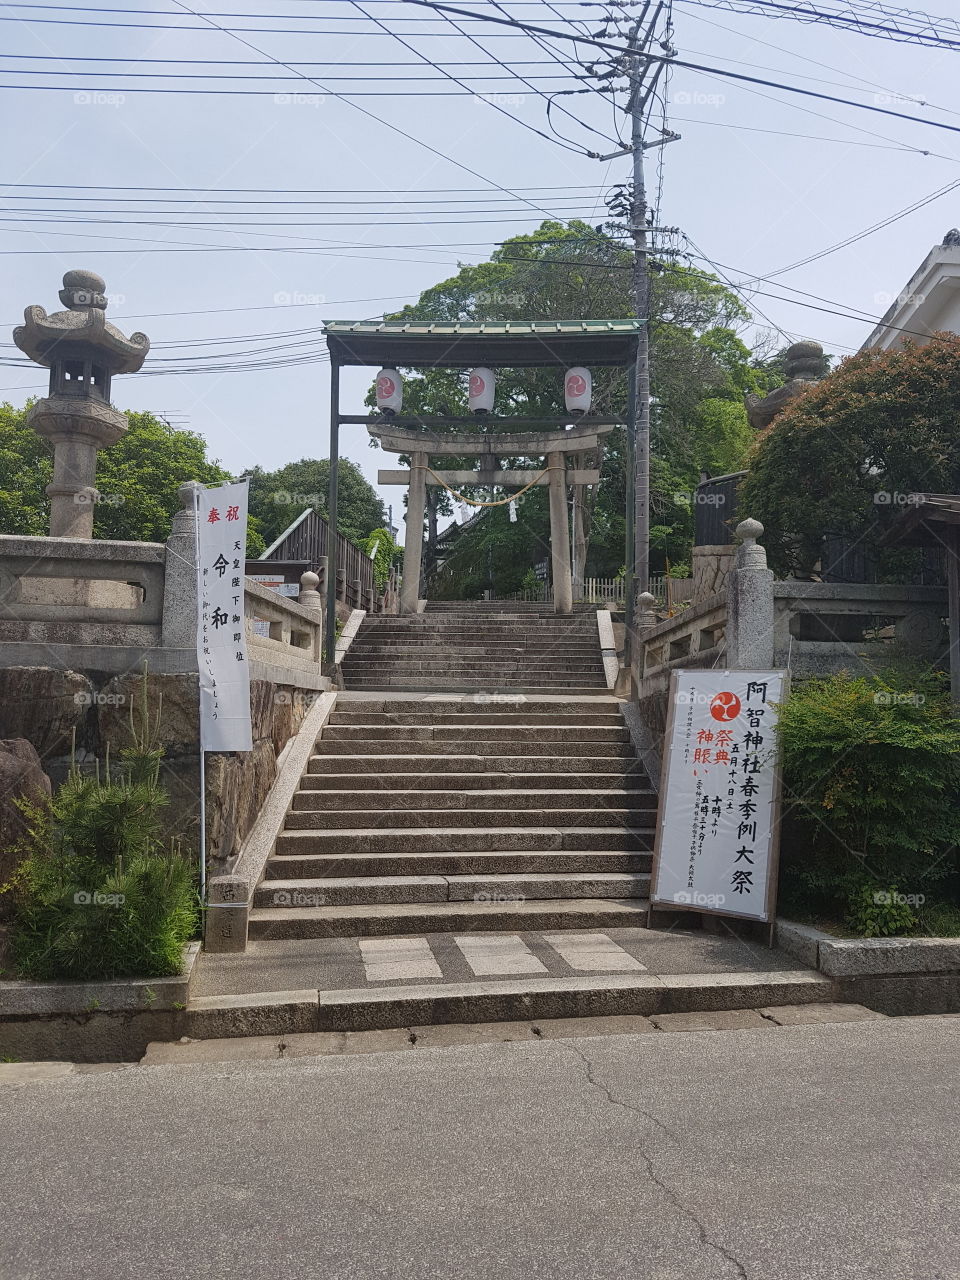 Aichi shrine entrance